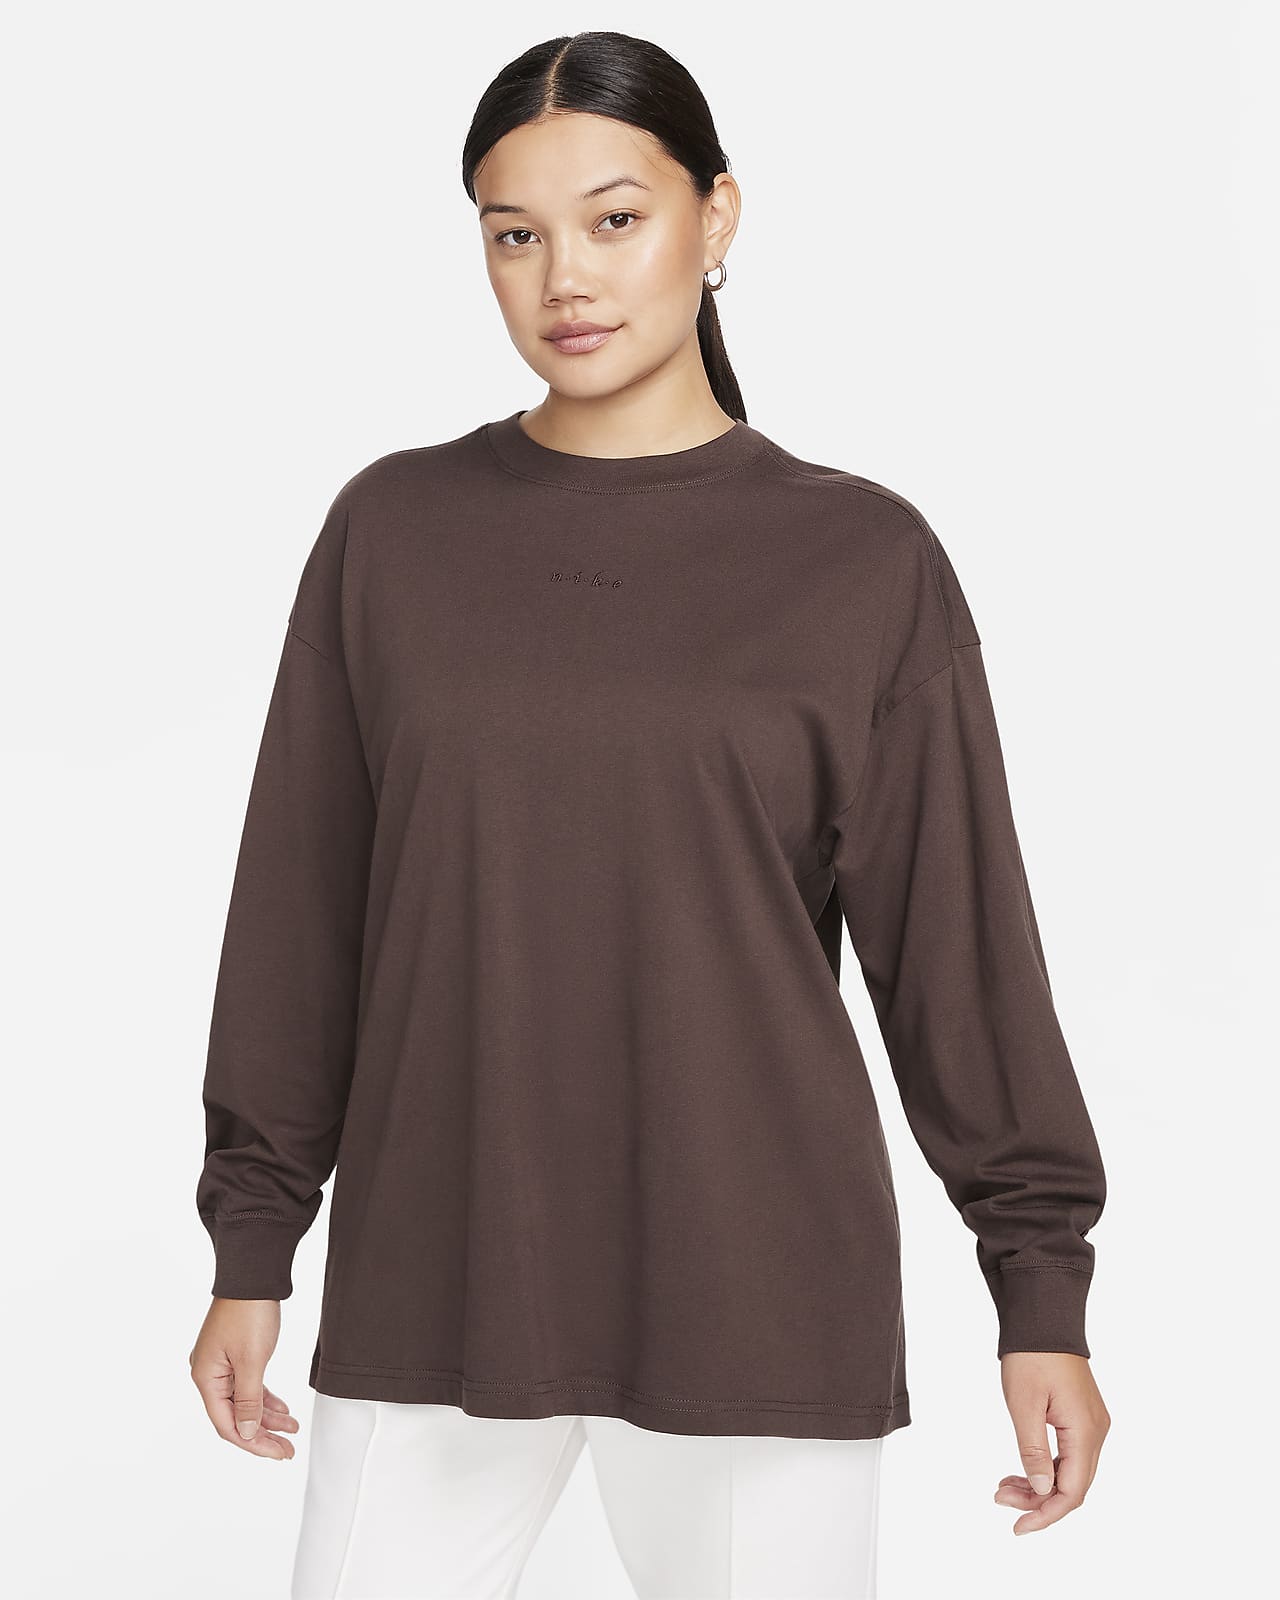 Women's Plus Size Long Sleeve Shirts. Nike CA